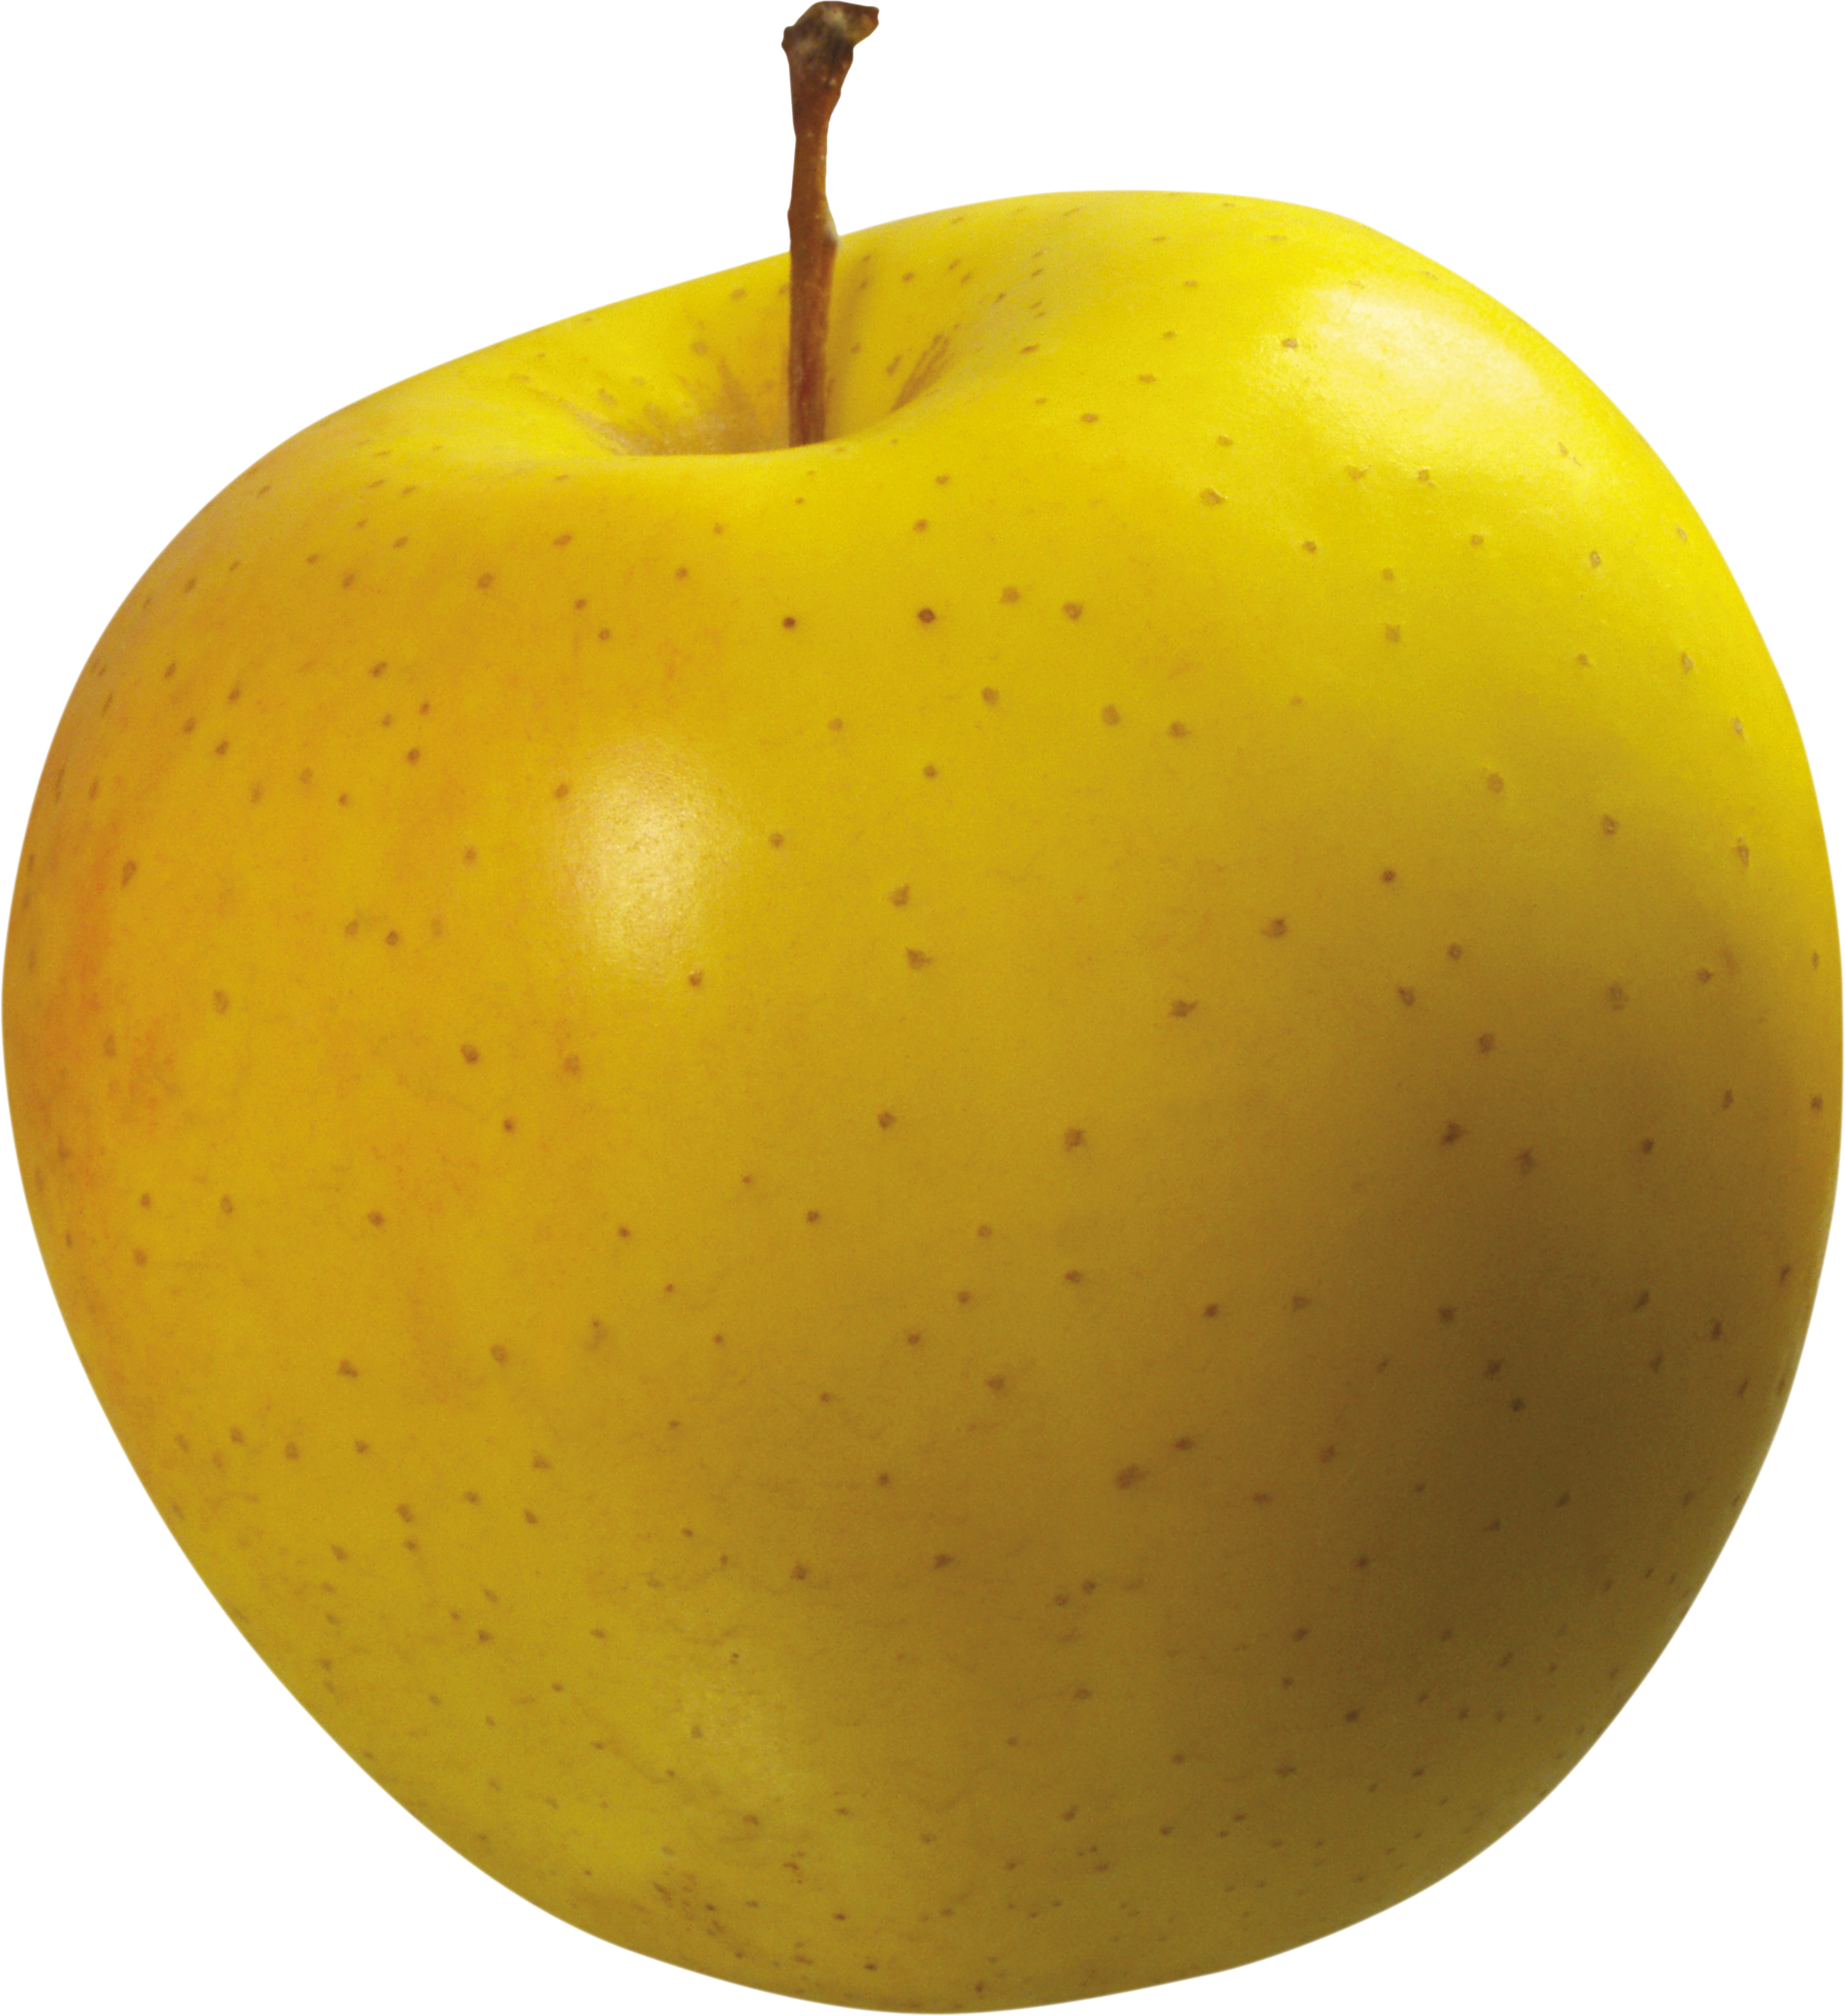 تصویر ساده و شیک سیب زرد طلایی از فاصله نزدیک با فرمت png